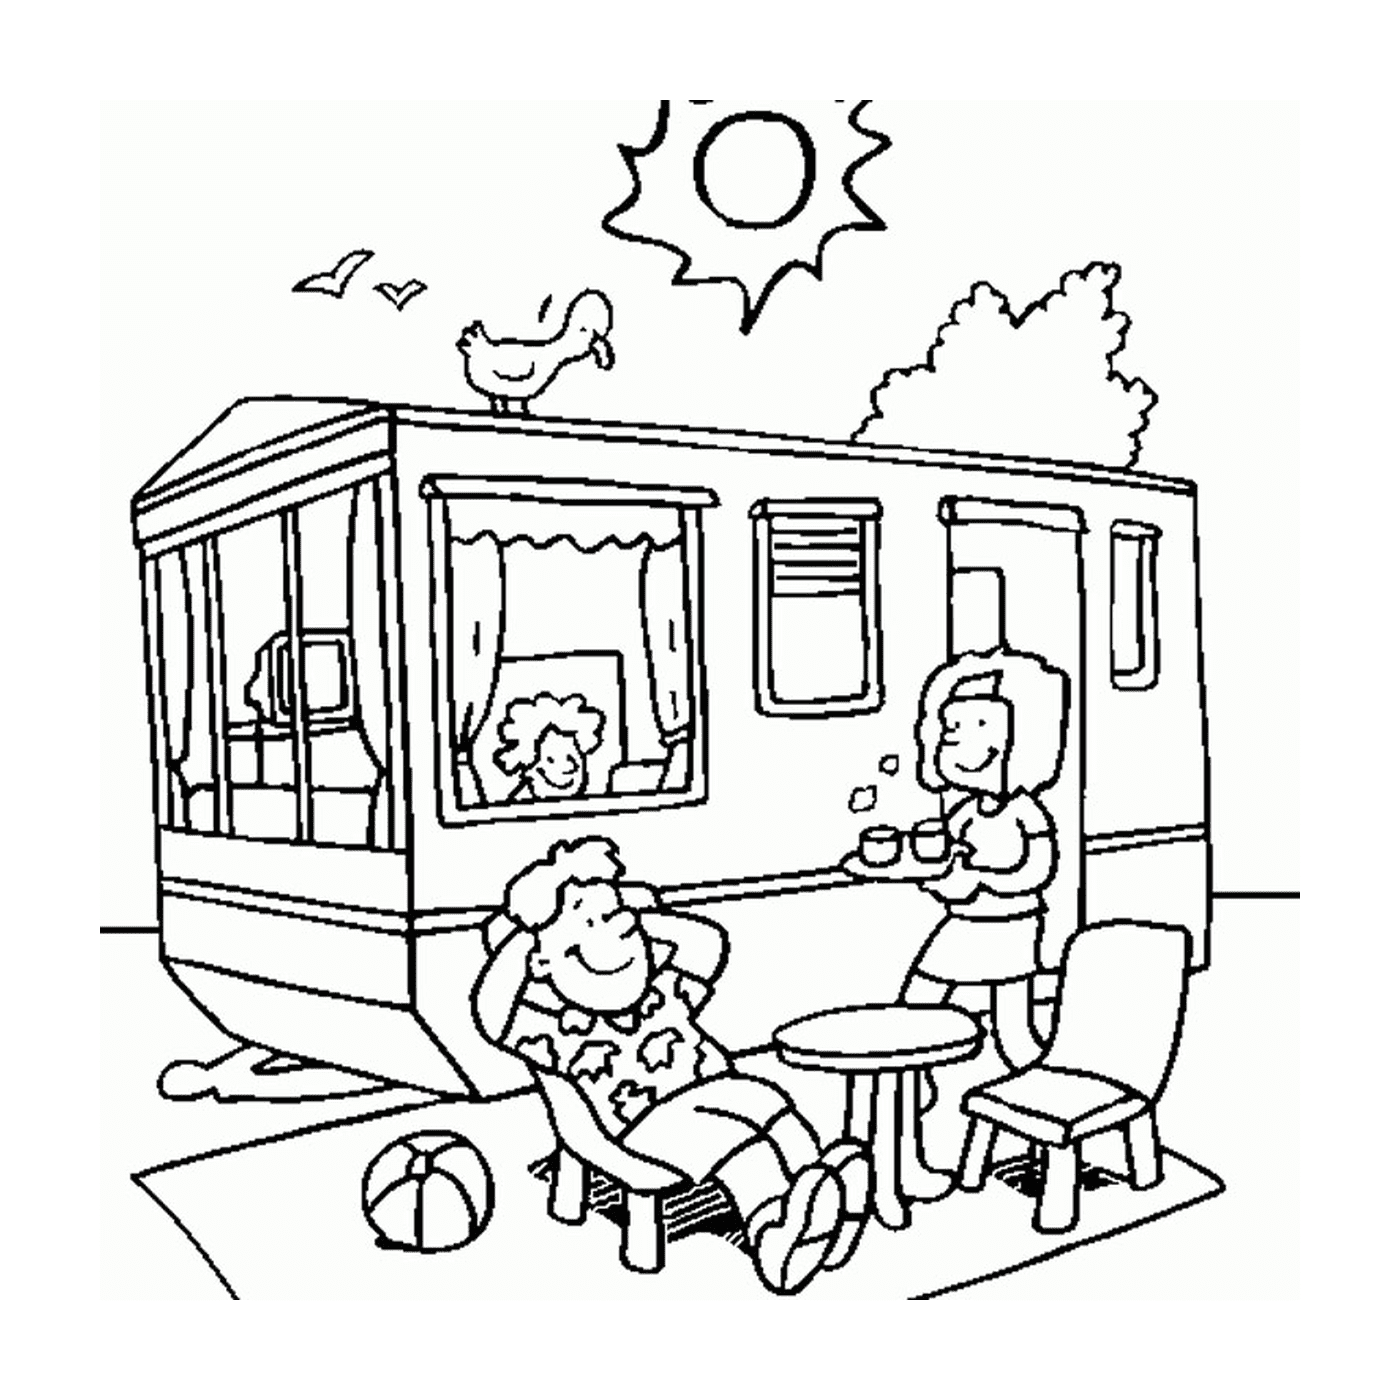  Persone sedute di fronte a un camper durante le vacanze estive 